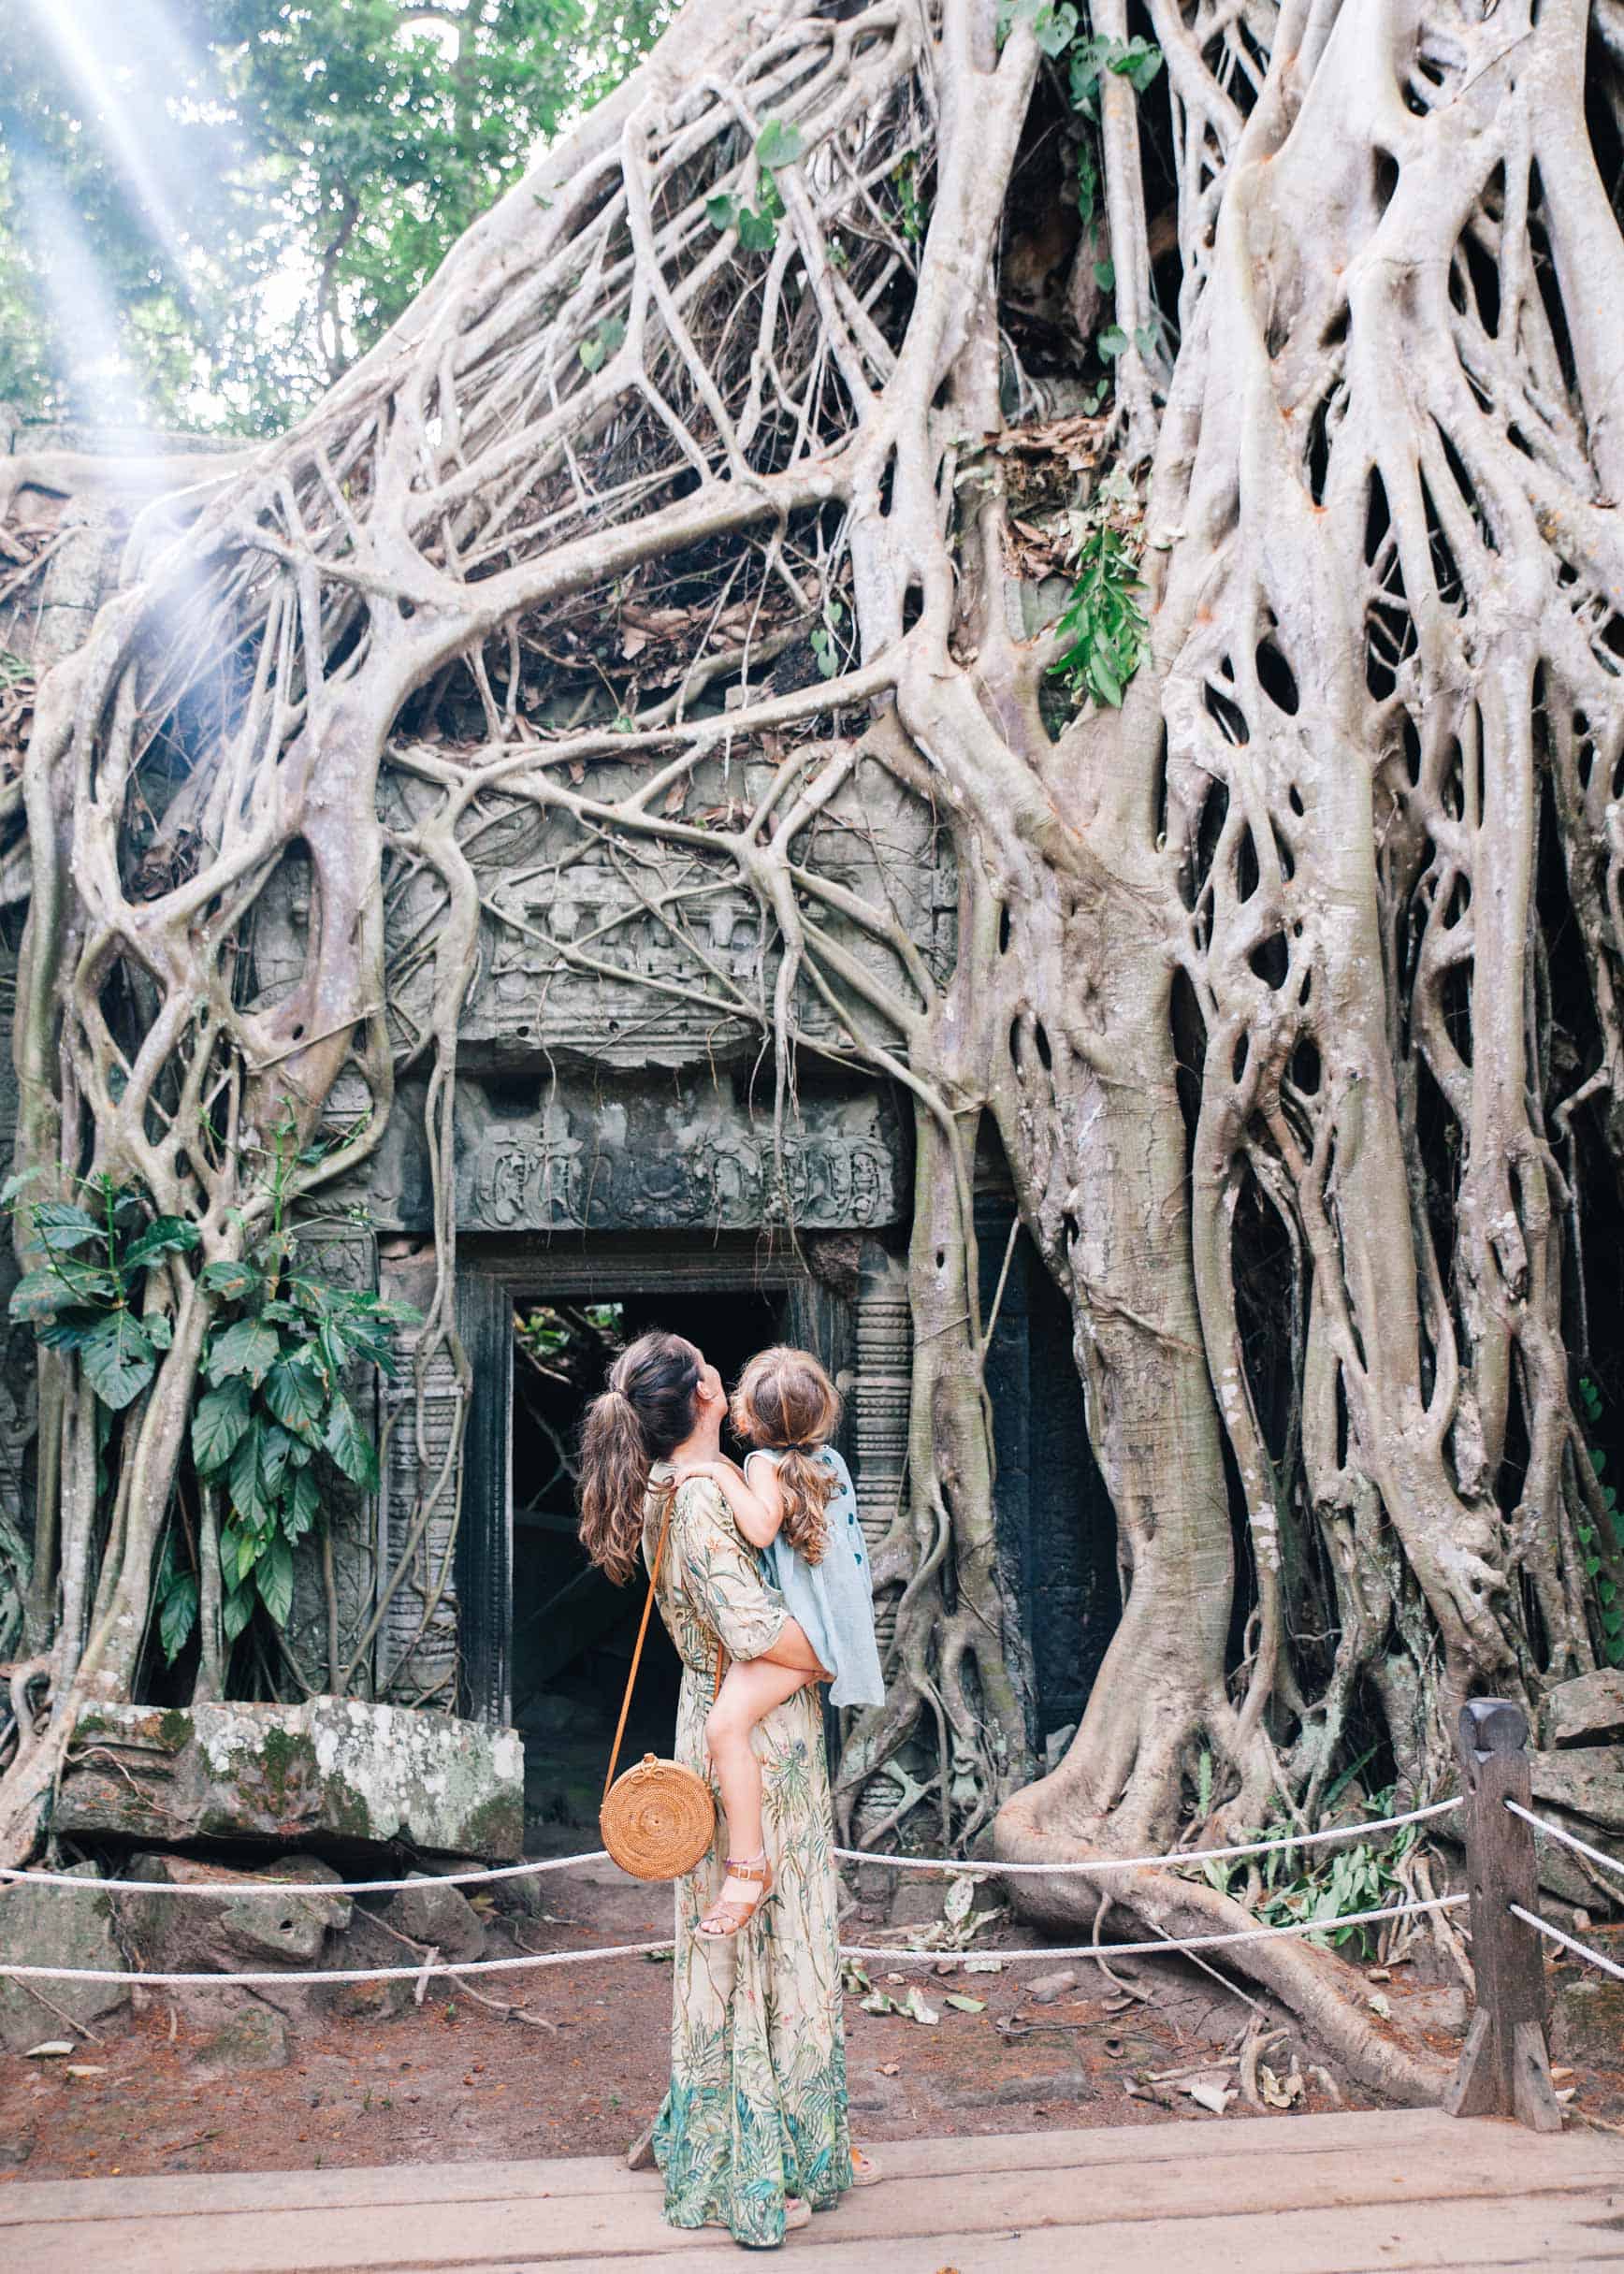 Viaje a Vietnam y Camboya: Nuestro itinerario de 15 días y alojamientos